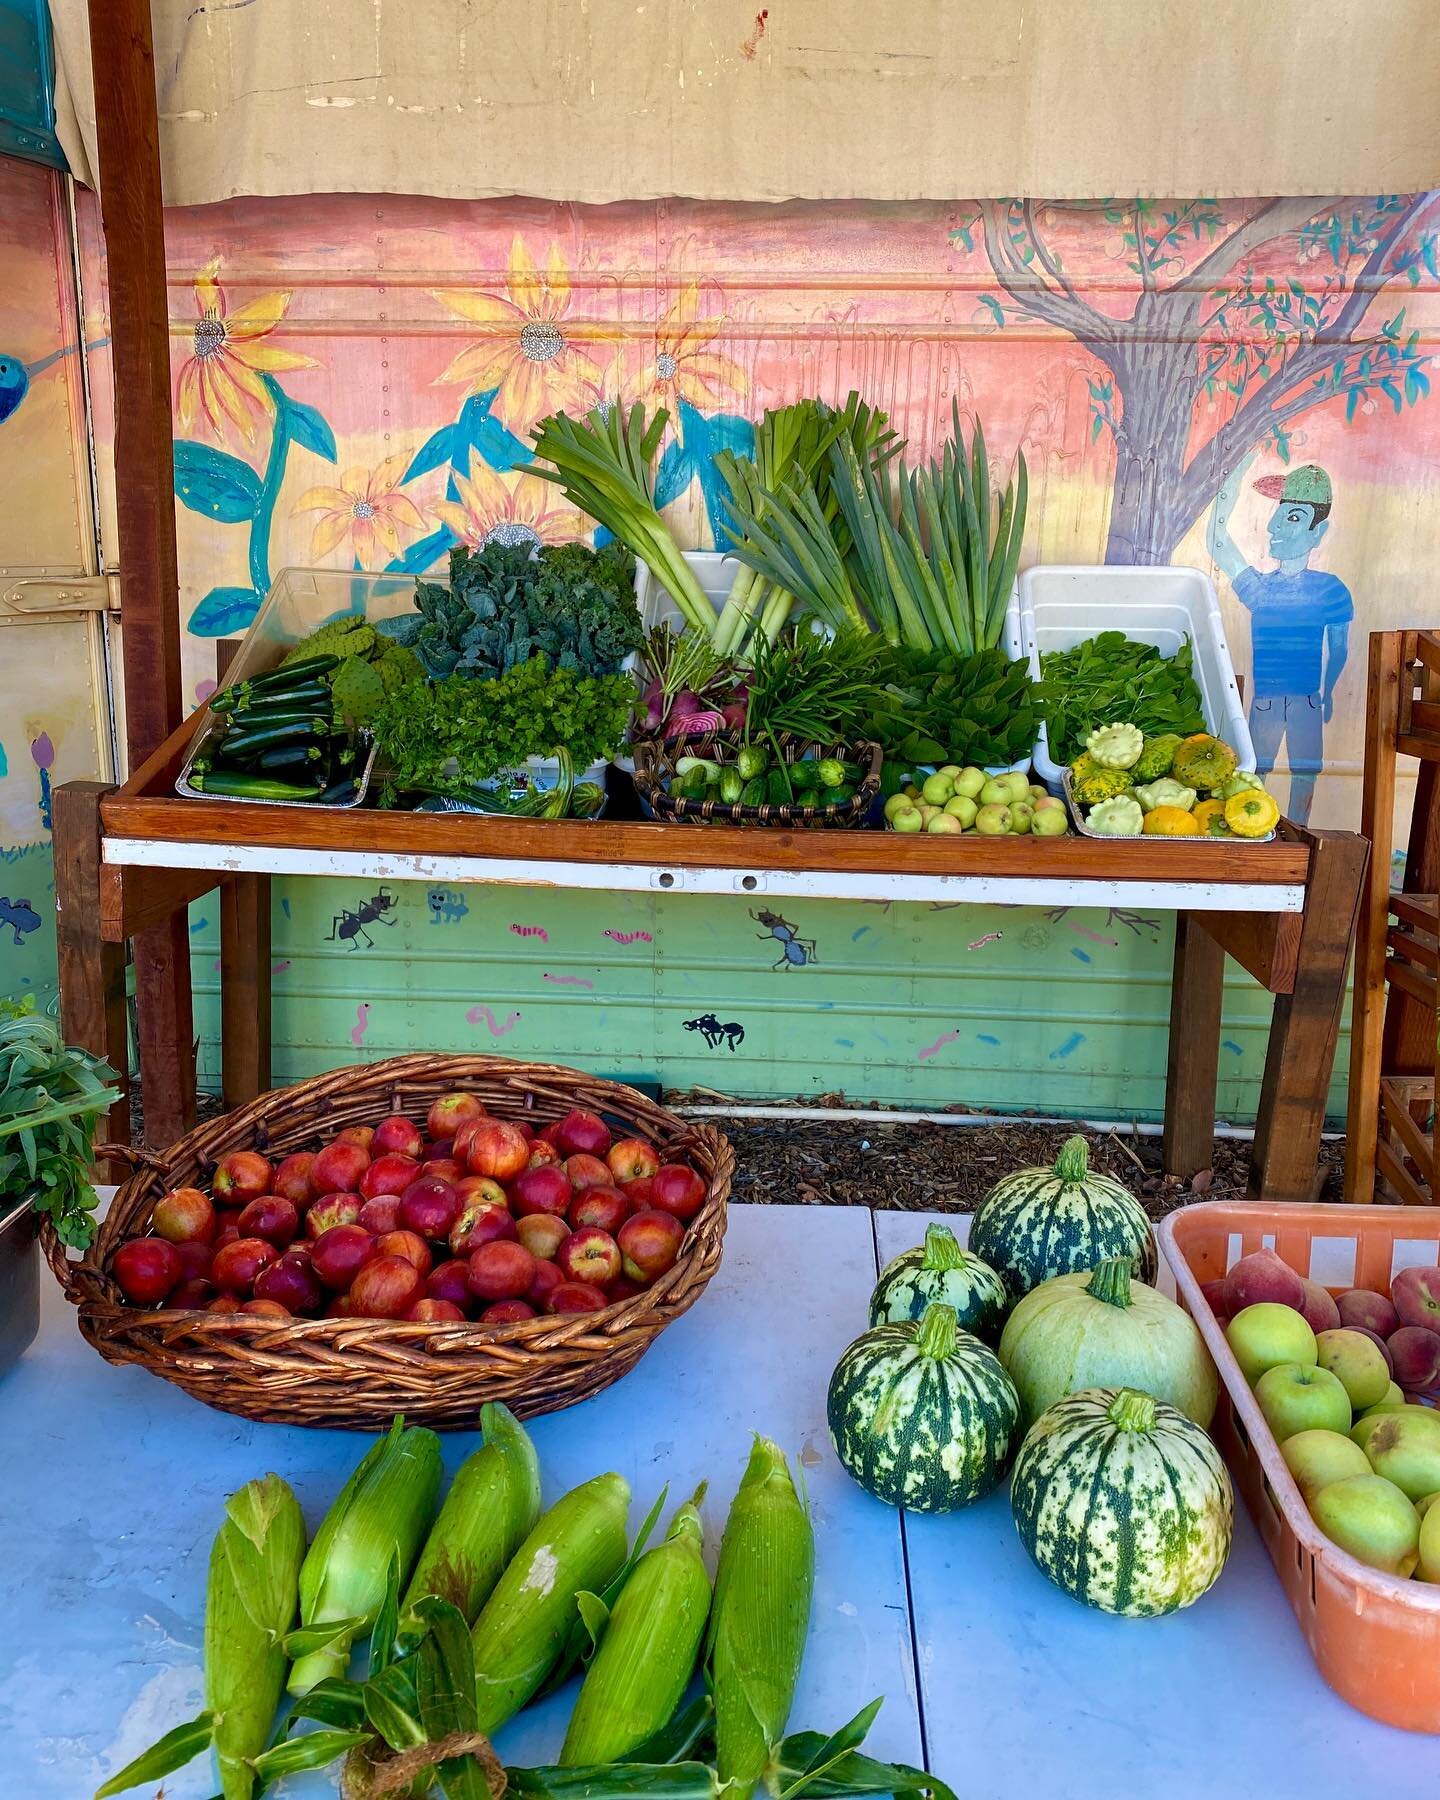 Saturday produce market open 8am-12pm! 🍑🌽 We have herbs, corn, squash, apples, melons, nectarines, onions, nopales, and more! 
~~~
&iexcl;Mercado de S&aacute;bado abierto de 8am-12pm! 🍑🌽 &iexcl;Tenemos hierbas, elotes, calabaza, manzanas, melones